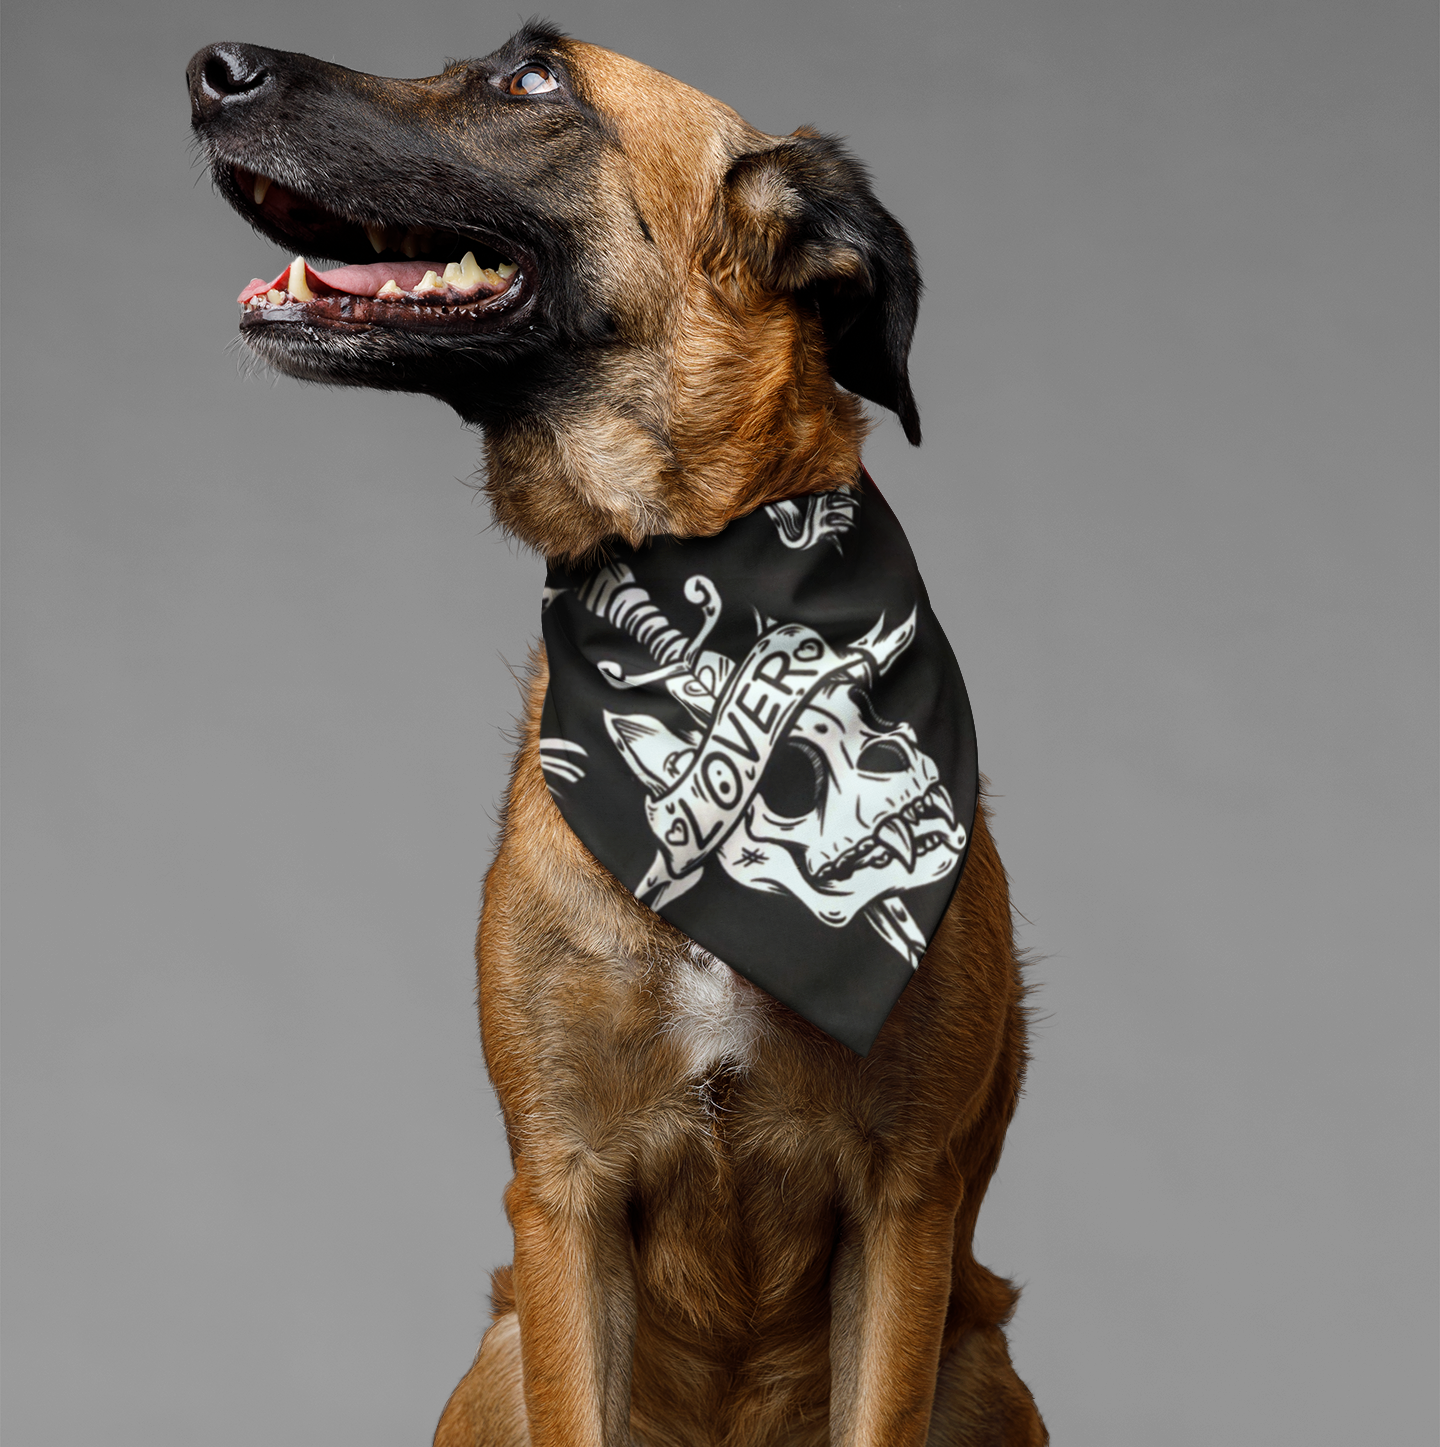 dog bandana black with dog skull print, loyal dog bandana, dog gift